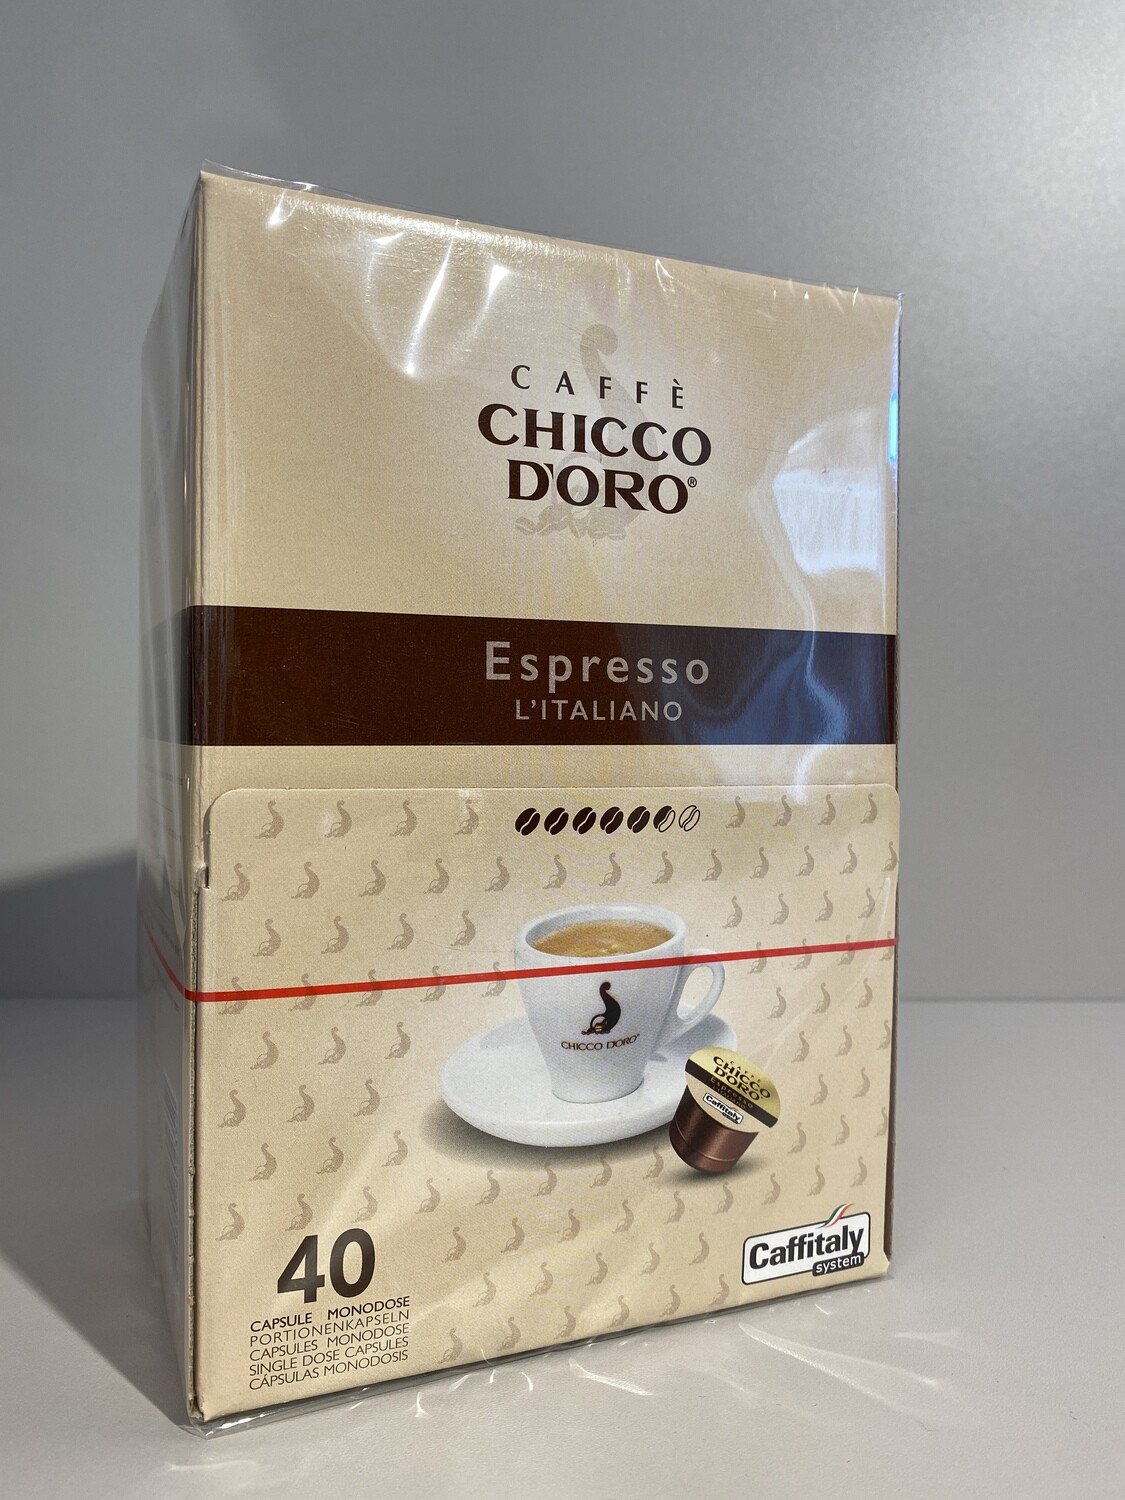 Chicco D'oro Kaffeekapseln Espresso L'Italiano